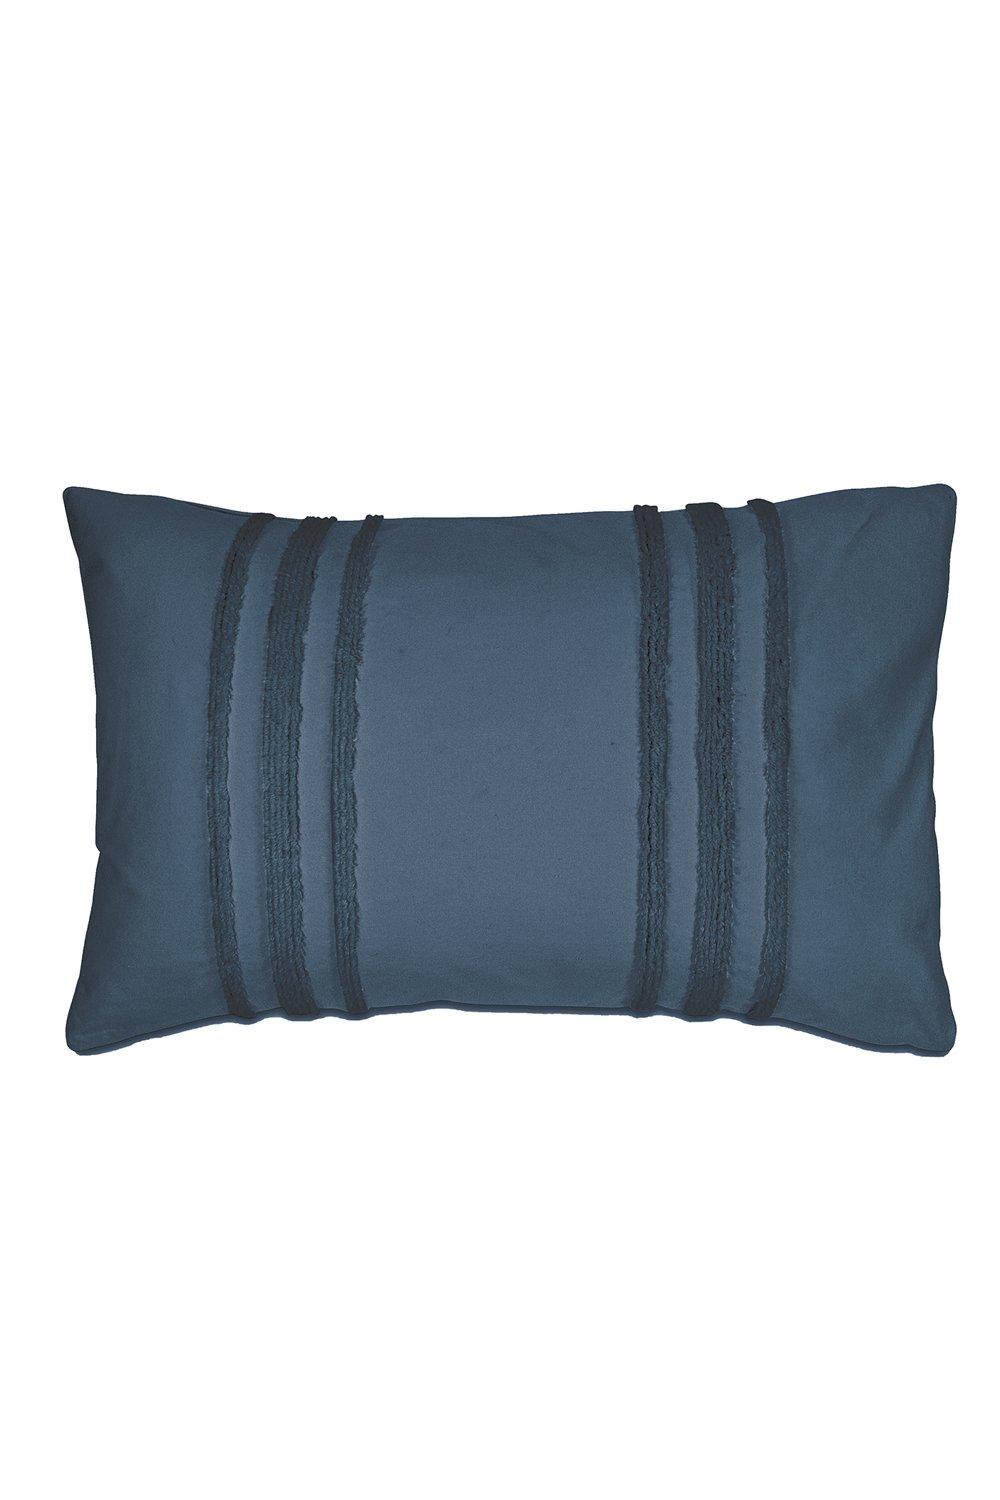 'Chenille Stripe' Cotton Standard Pillowcase